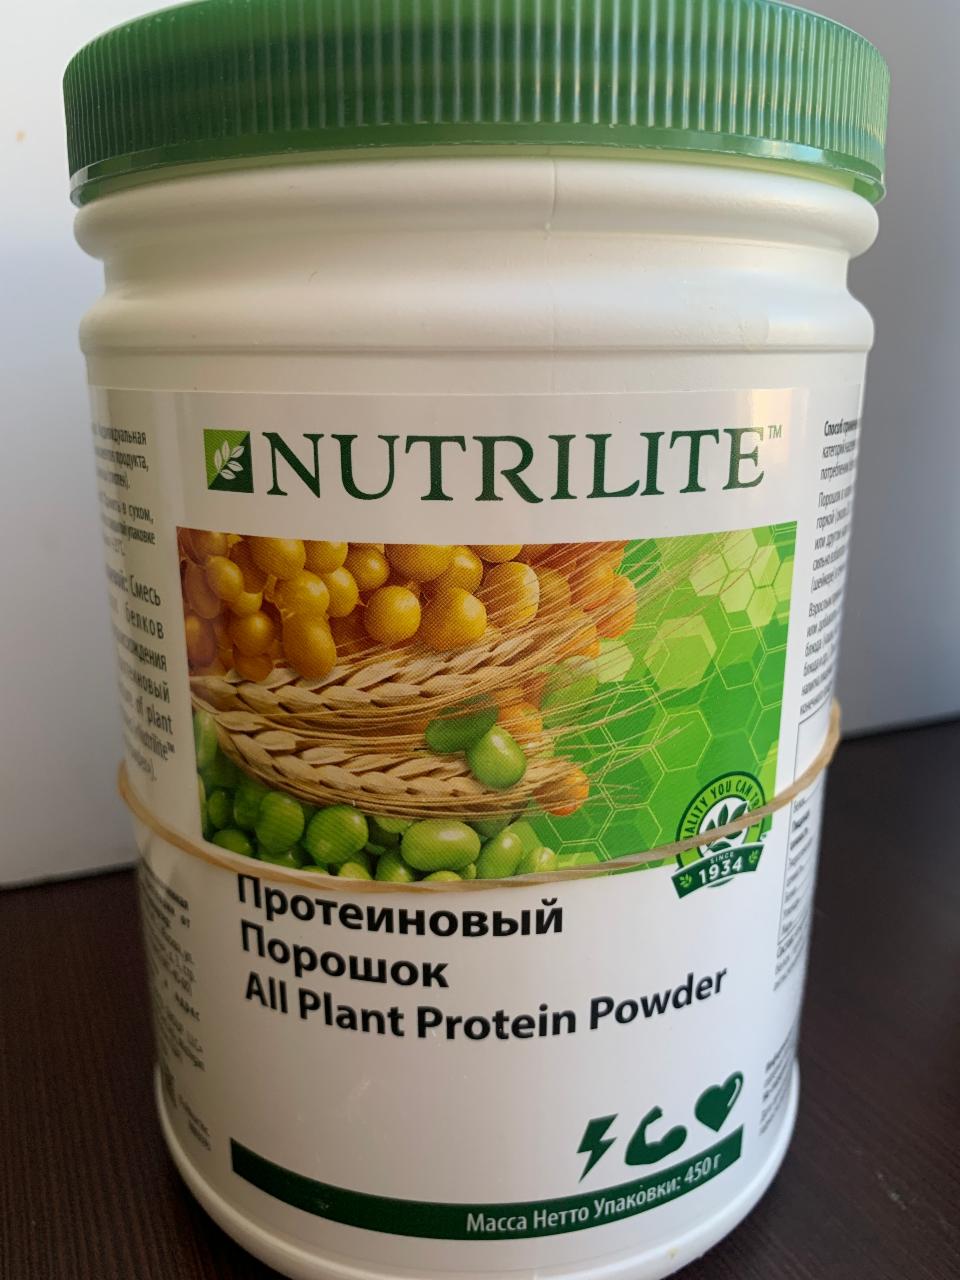 Фото - Протеиновый порошок на растительной основе All Plant Protein Powder Nutrilite